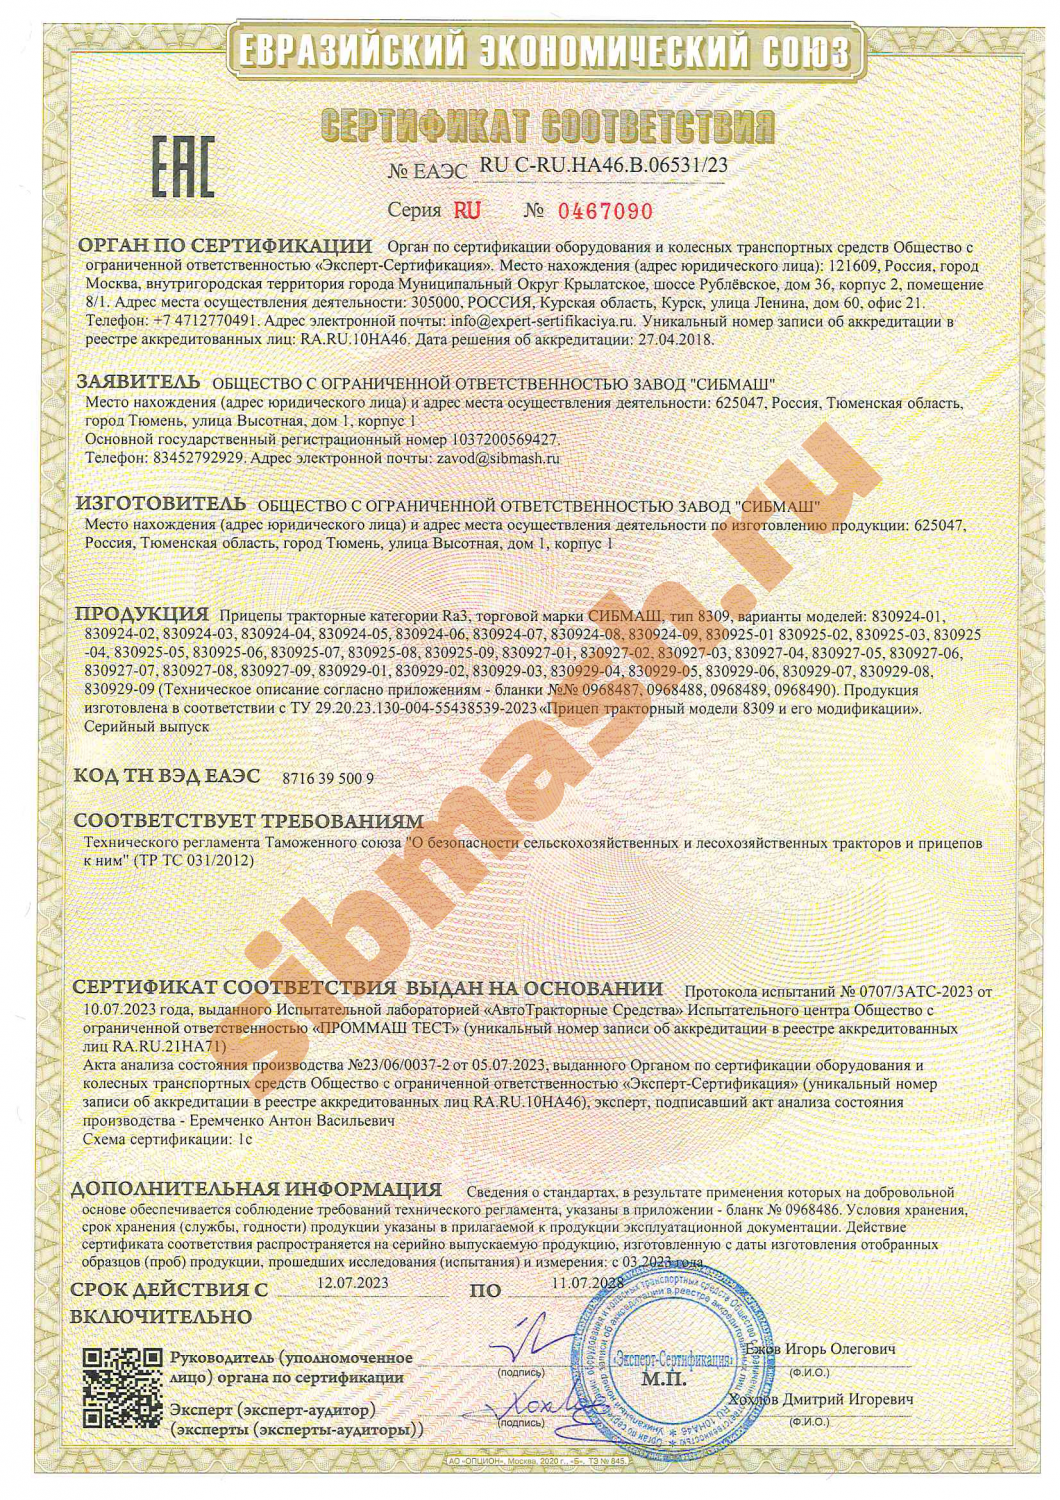 Сертификат соответствия "Евразийский экономический союз"